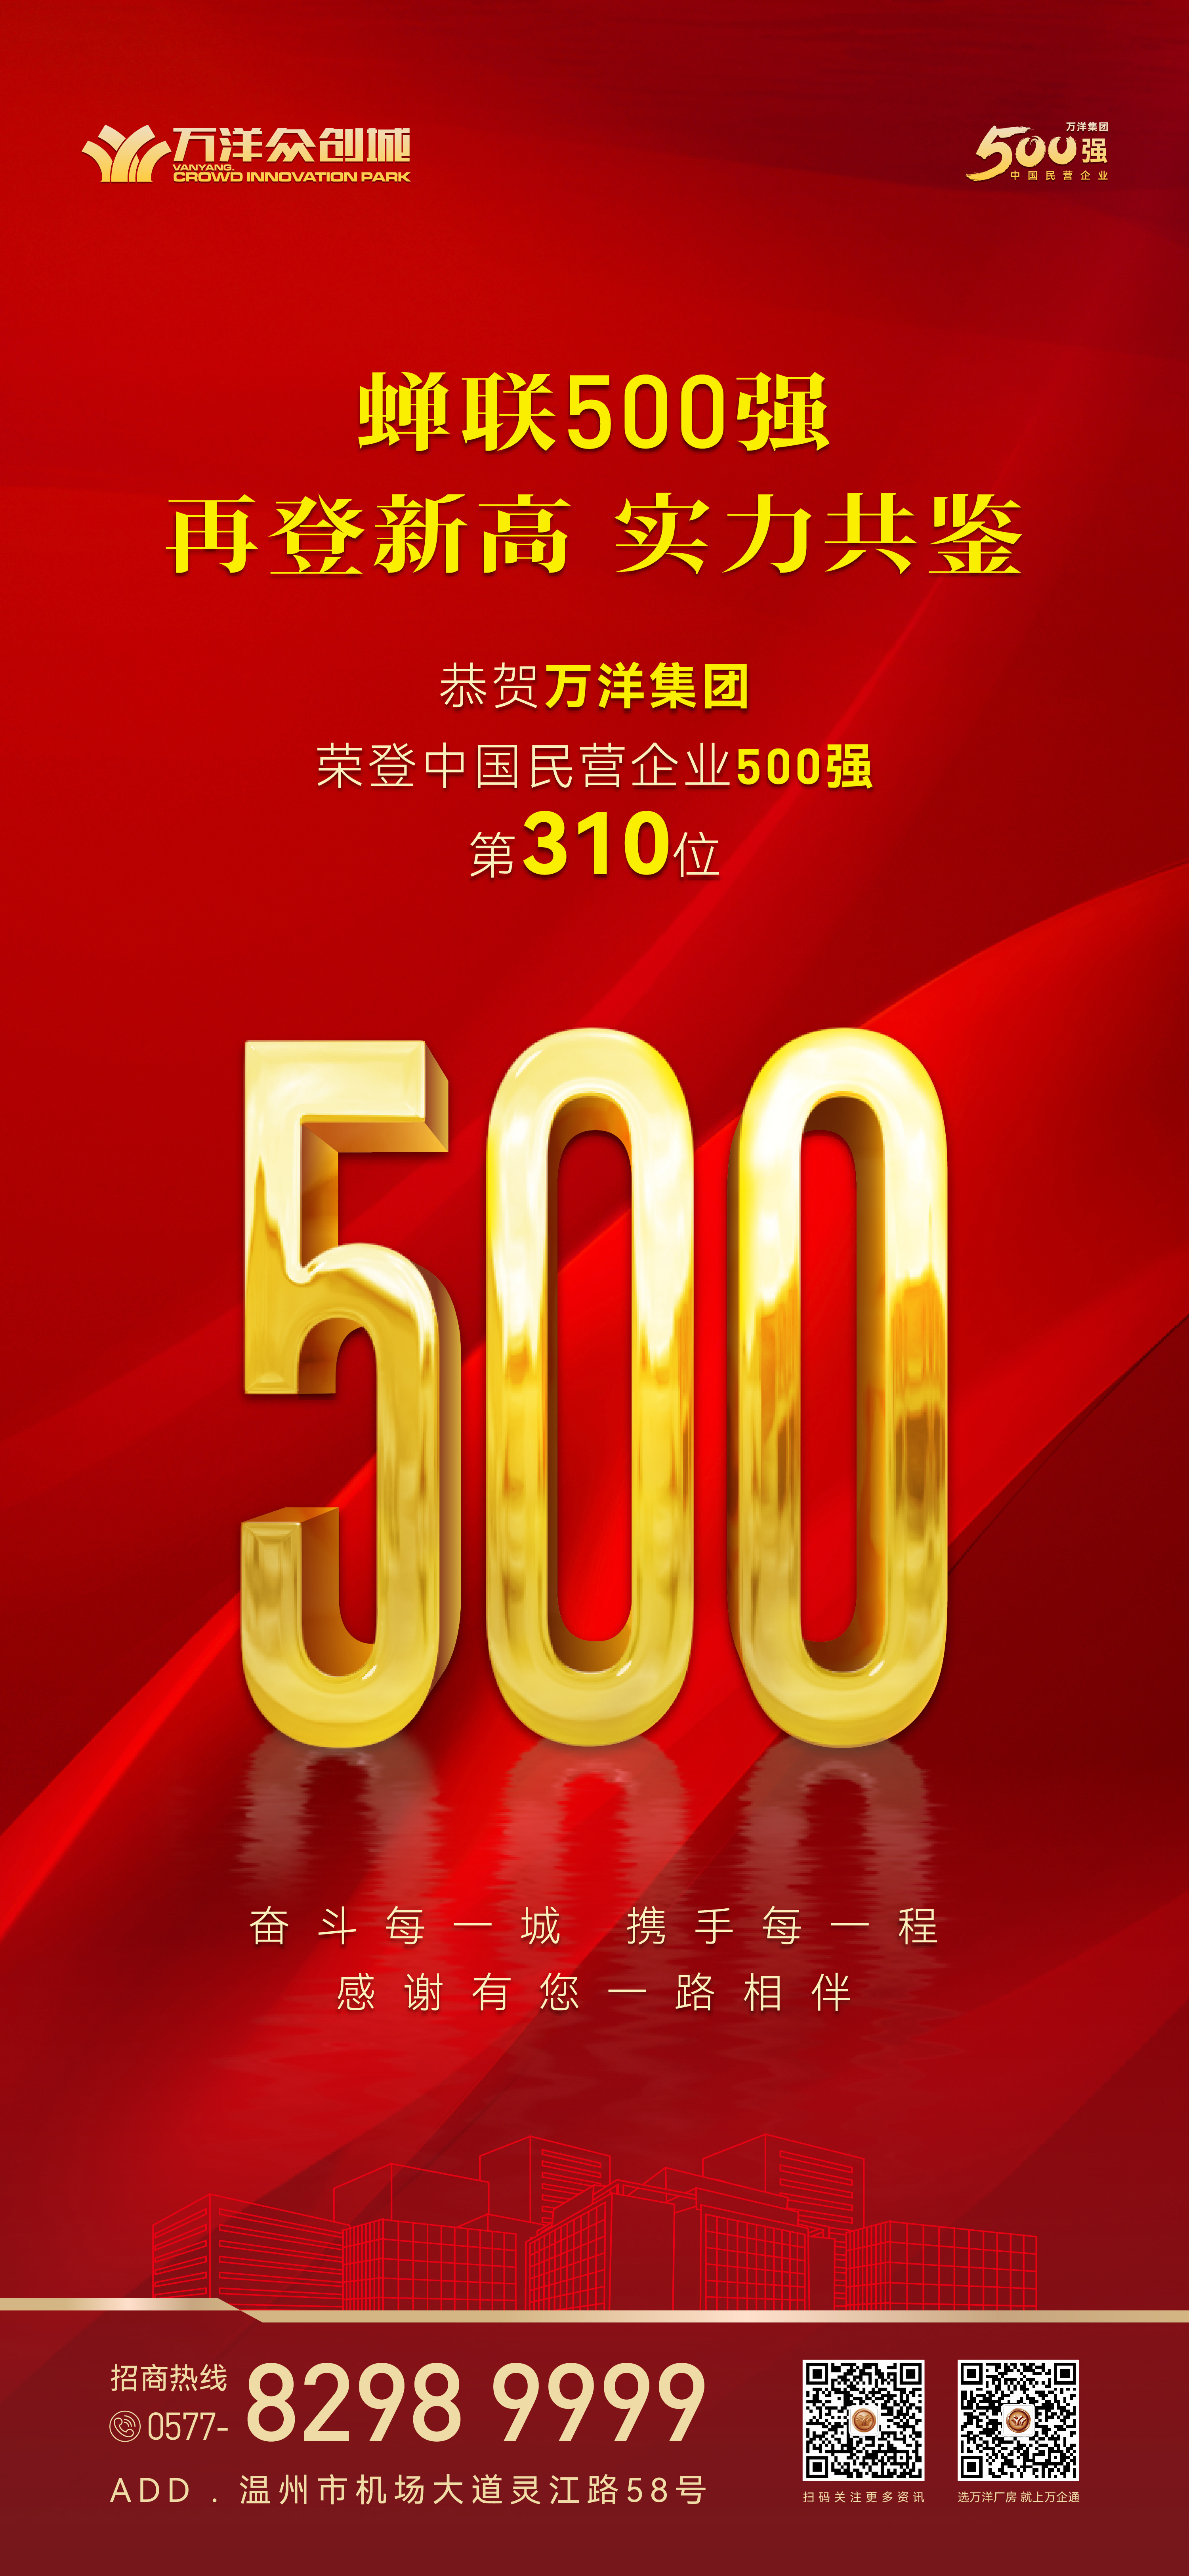  耀世集团再登中国民营企业500强榜单